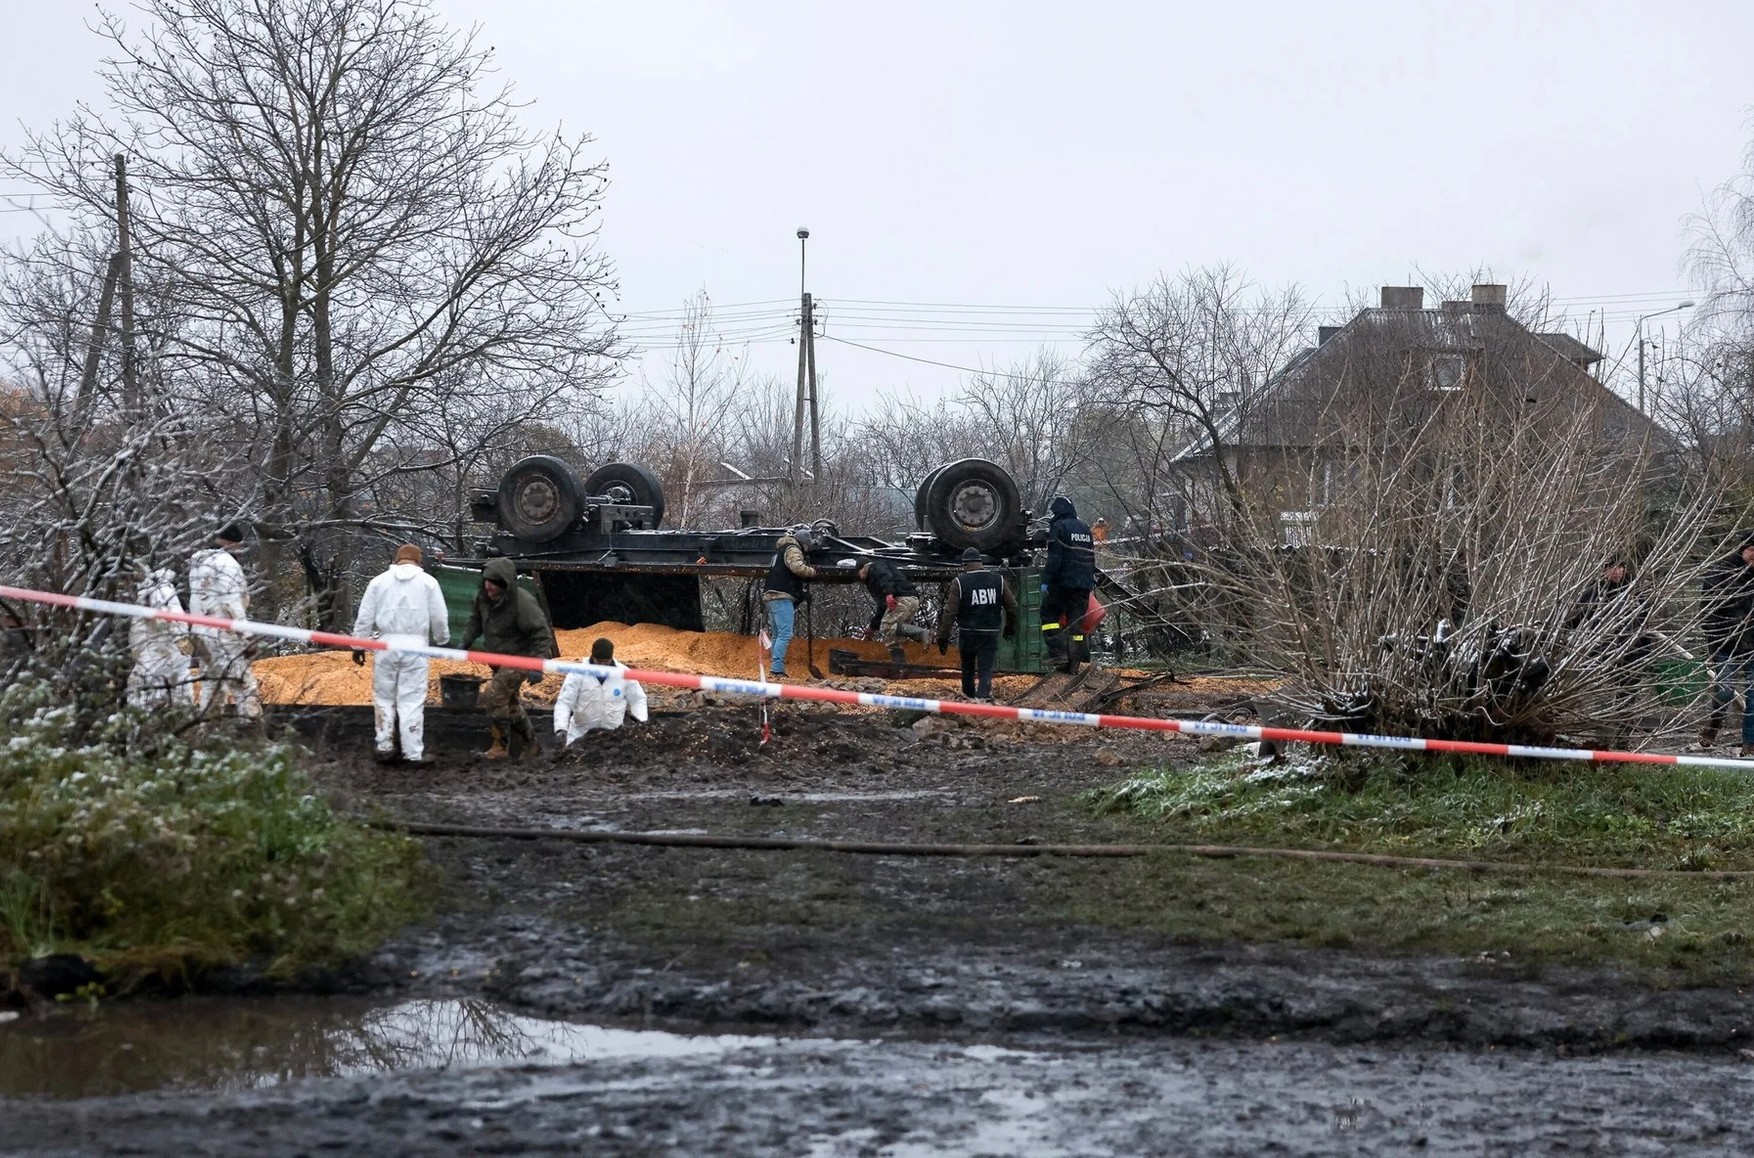 Rzeczpospolita: Польша выступит против привлечения Украины к расследованию инцидента с падением ракеты